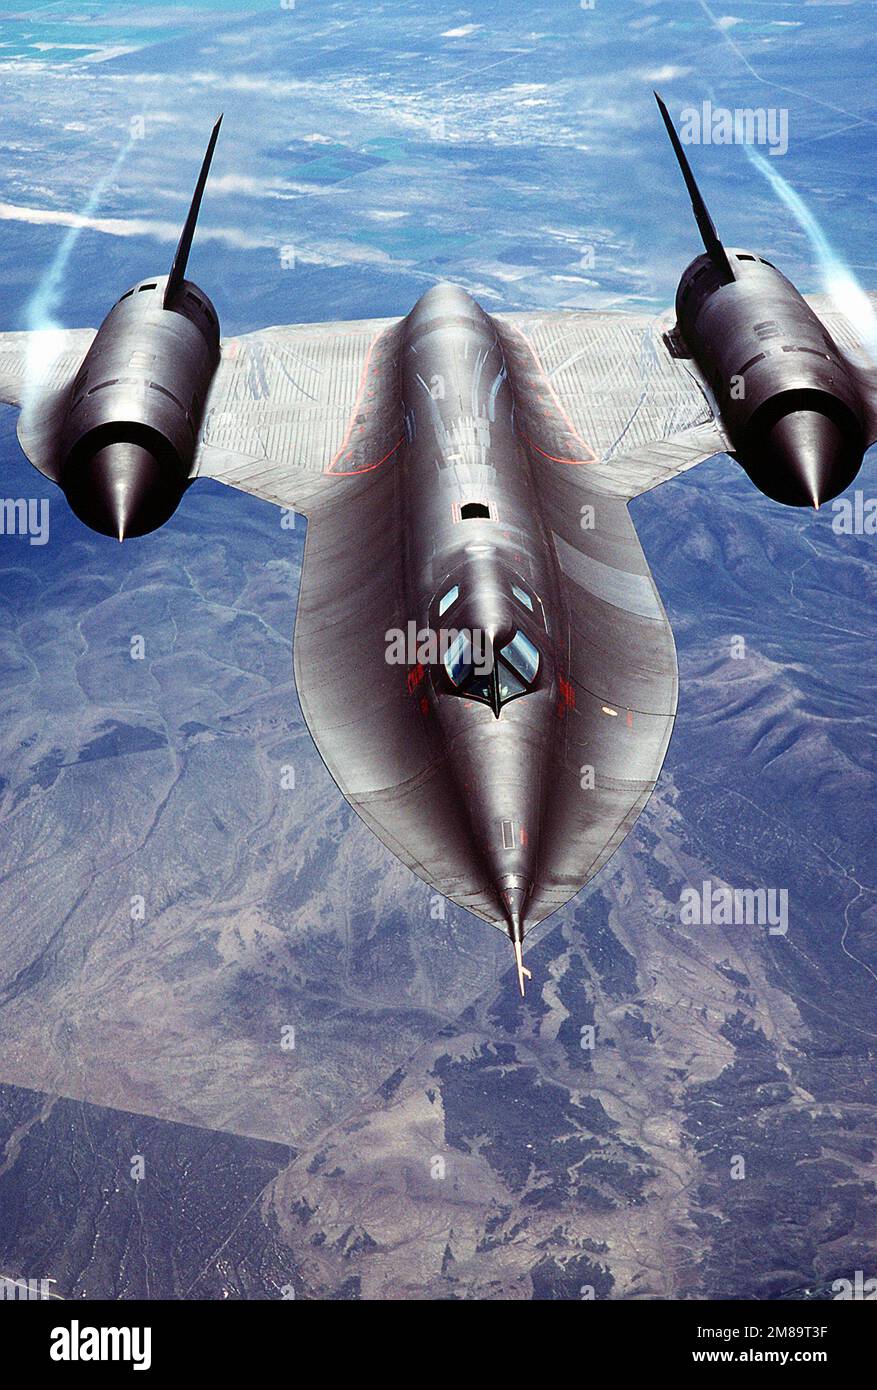 Eine Luft-Luft-Frontansicht eines strategischen Aufklärungsflugzeugs SR-71a. Die SR-71 ist inoffiziell als "Blackbird" bekannt. Basis: Luftwaffenstützpunkt Beale Bundesstaat: Kalifornien (CA) Land: Vereinigte Staaten von Amerika (USA) Stockfoto